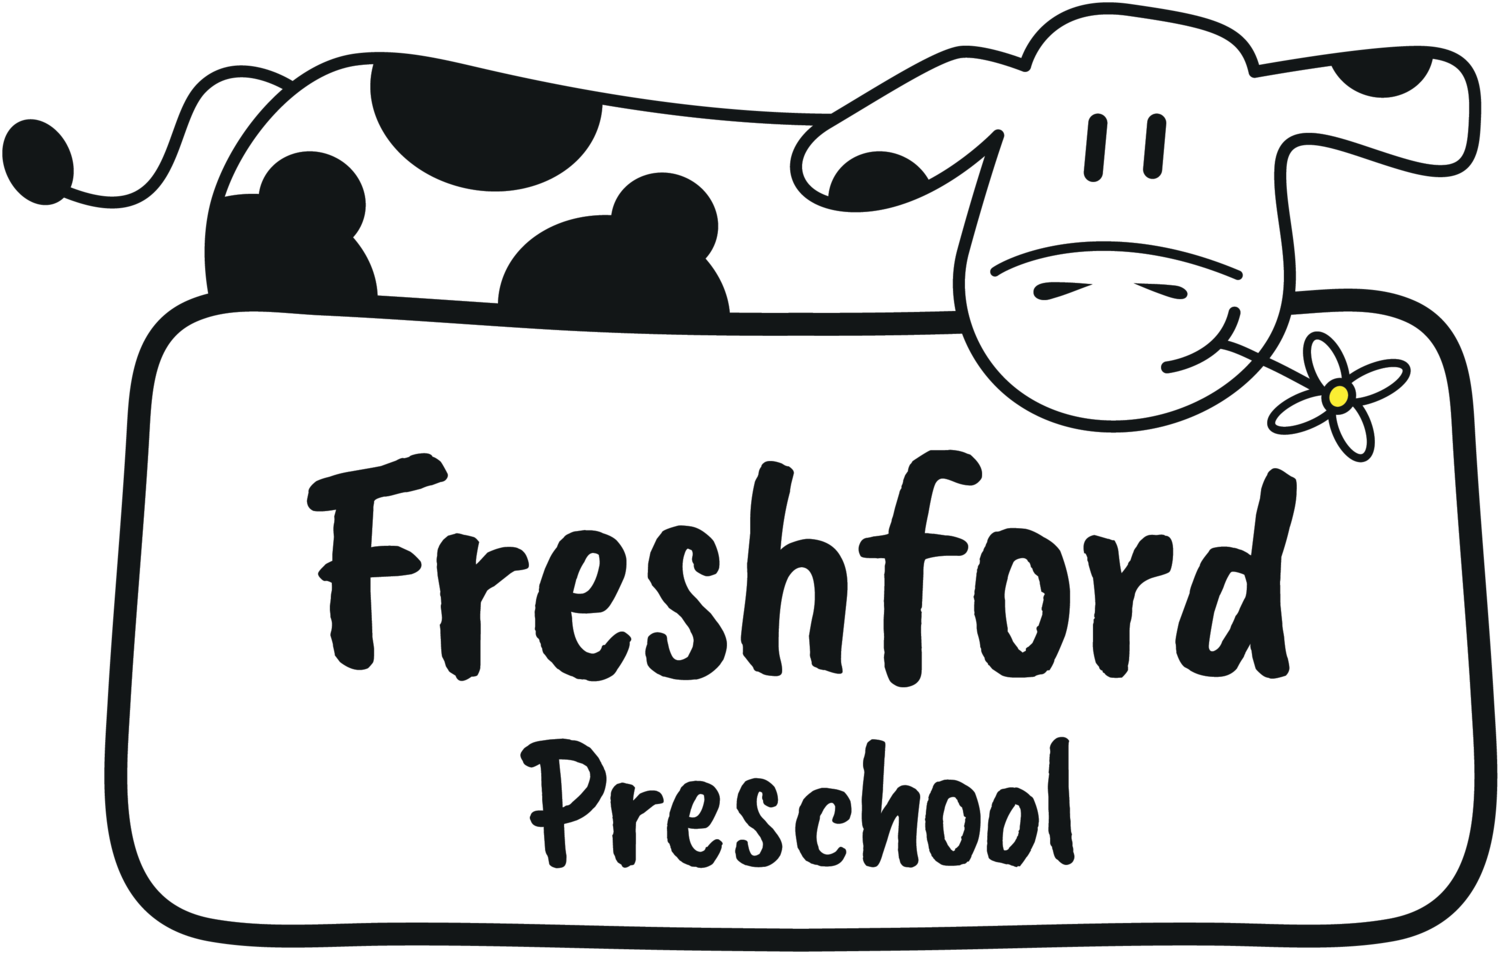 Freshford Preschool